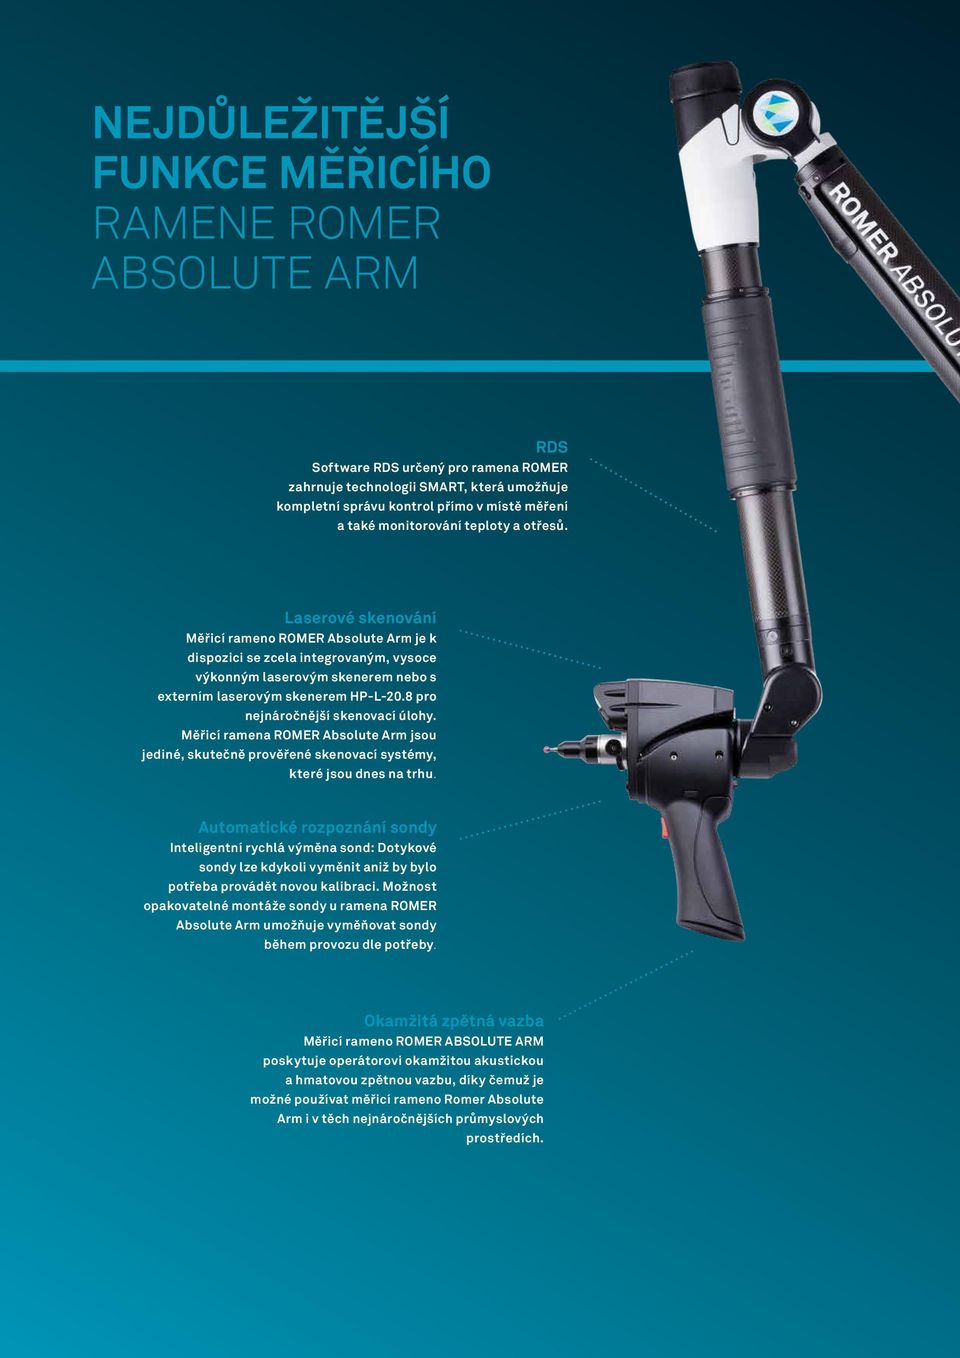 8 pro nejnáročnější skenovací úlohy. Měřicí ramena ROMER Absolute Arm jsou jediné, skutečně prověřené skenovací systémy, které jsou dnes na trhu.